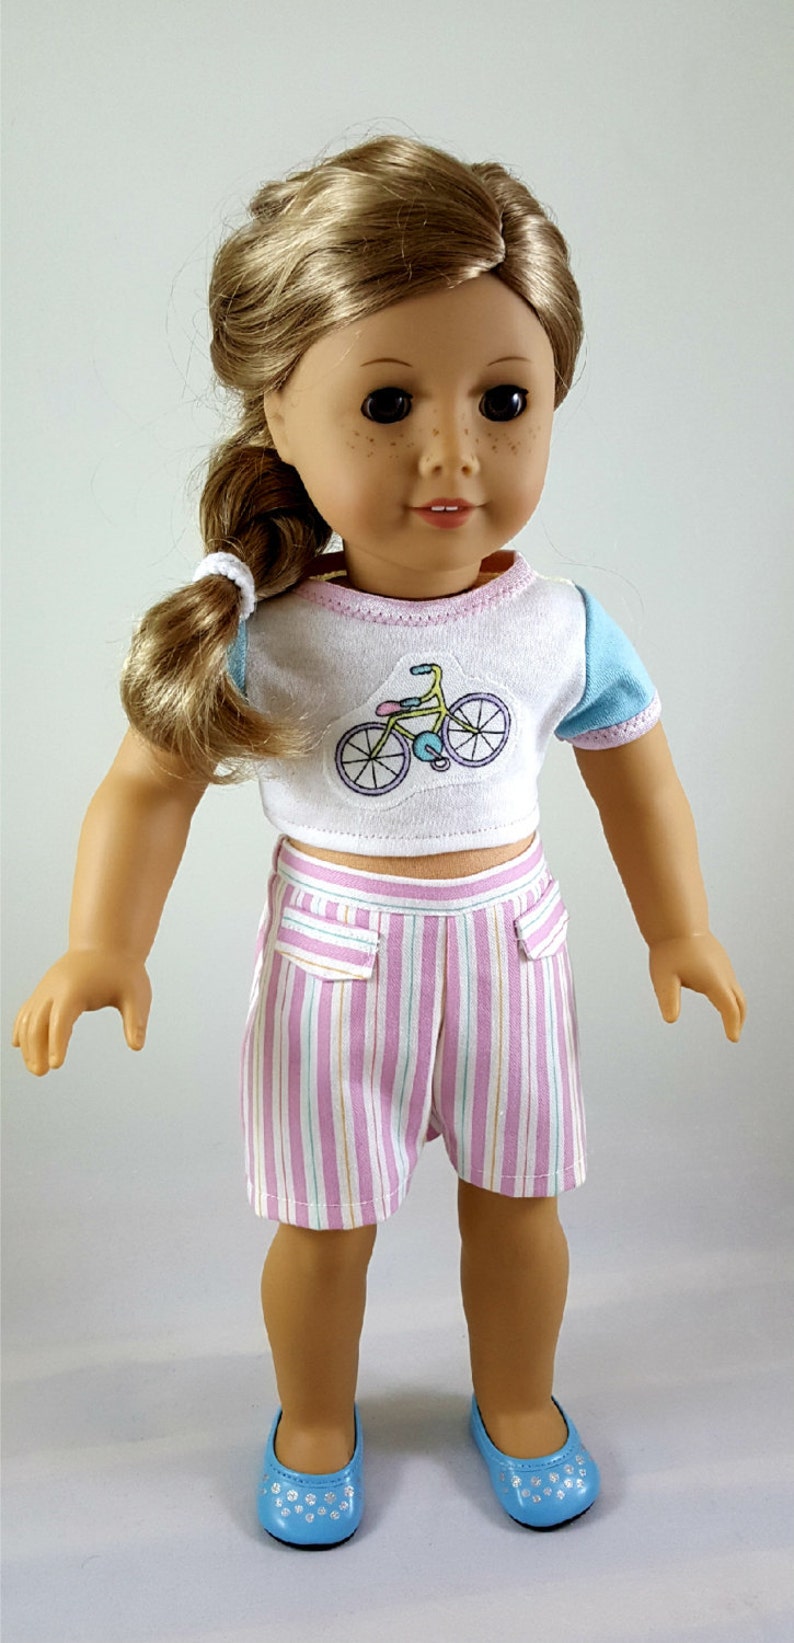 Top croppeded de vélo et short rayé conçus pour sadapter aux poupées de 18 pouces Crop Top & Shorts